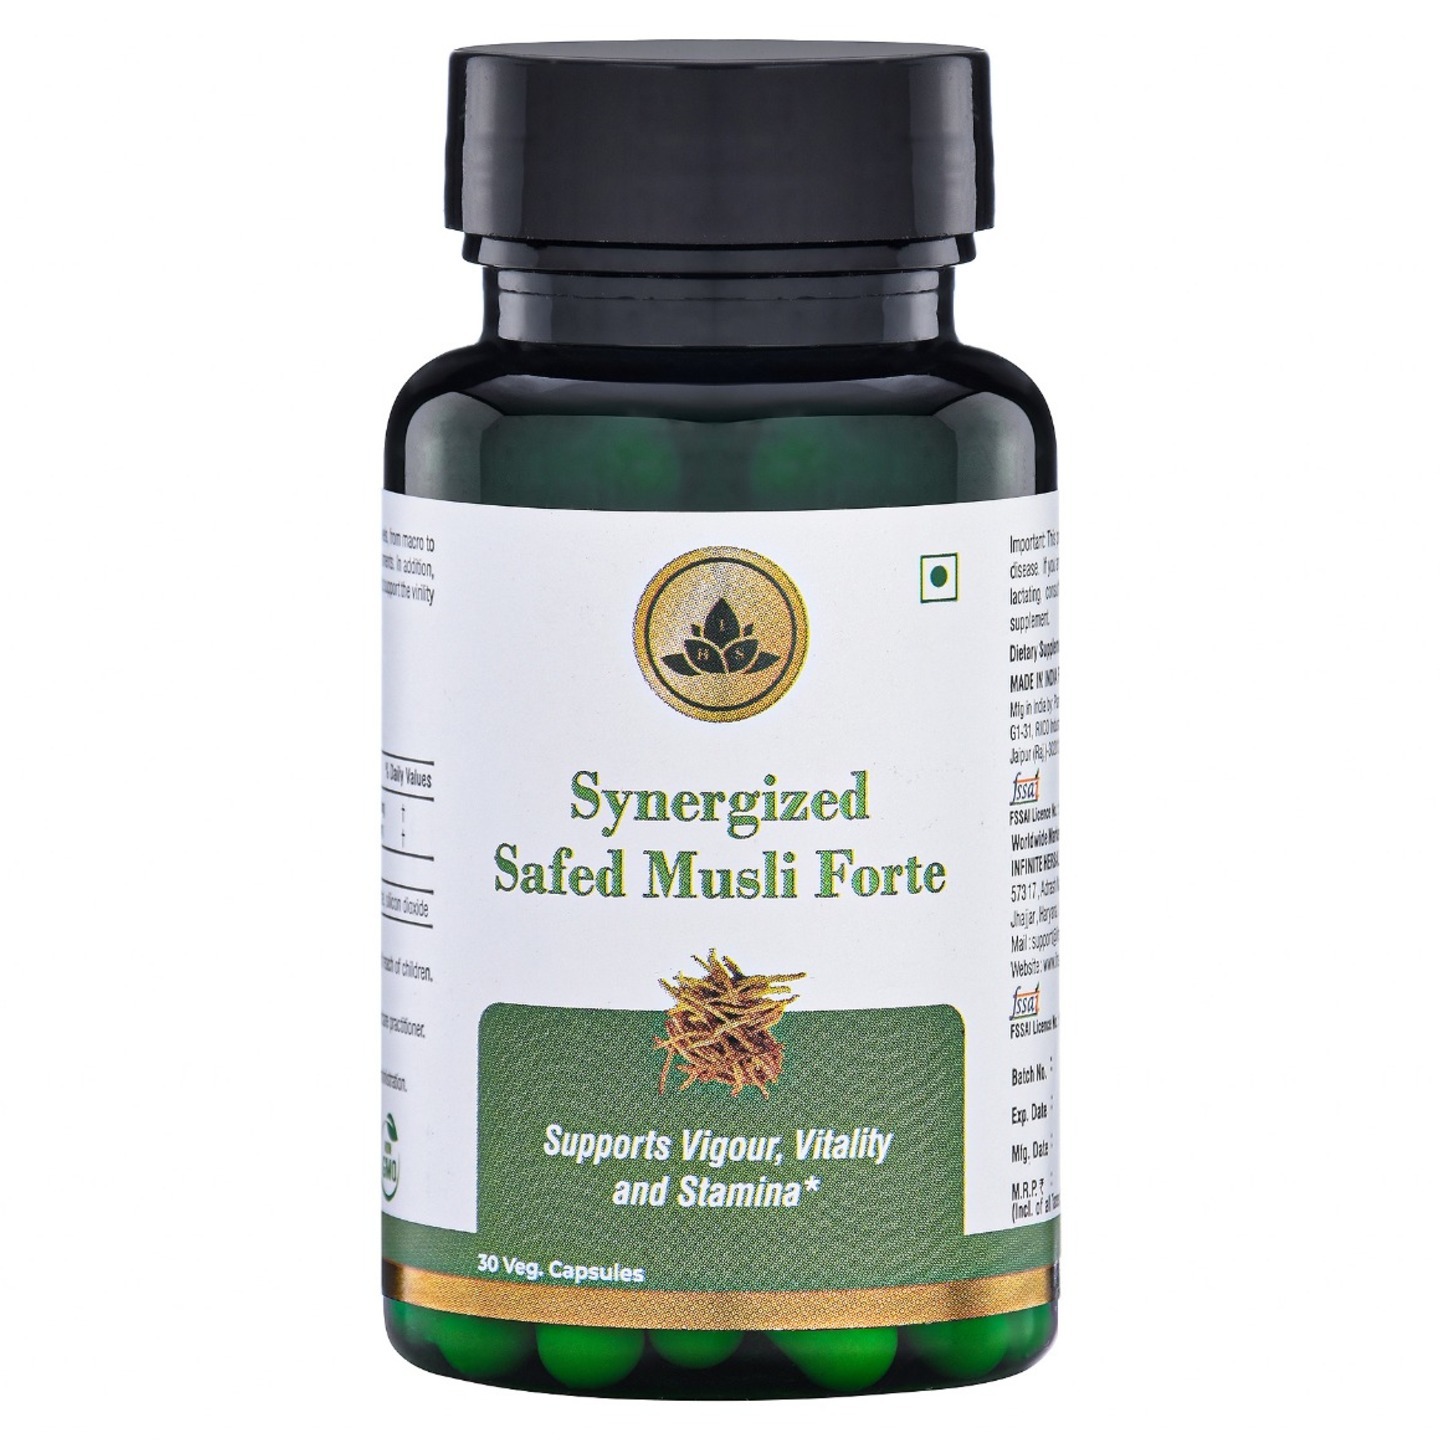 Synergized Safed Musli Forte